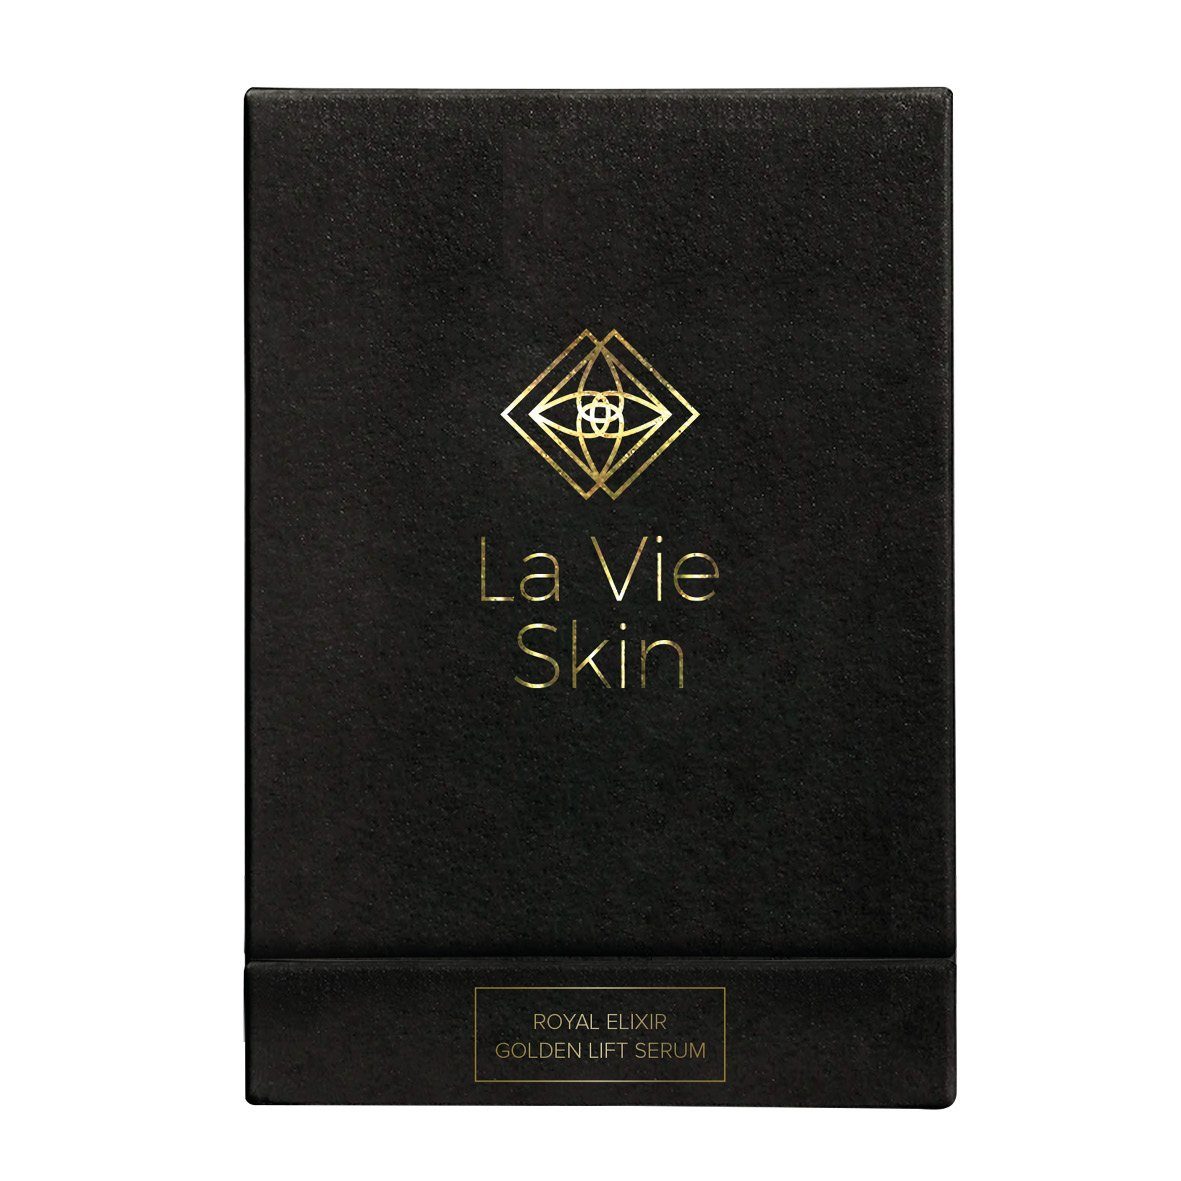 - - Elixir Lifting La Skin Vie Golden Serum, Gold - Lipofilling Feuchtigkeitsspendend Lift 24K Royal Gesichtsserum